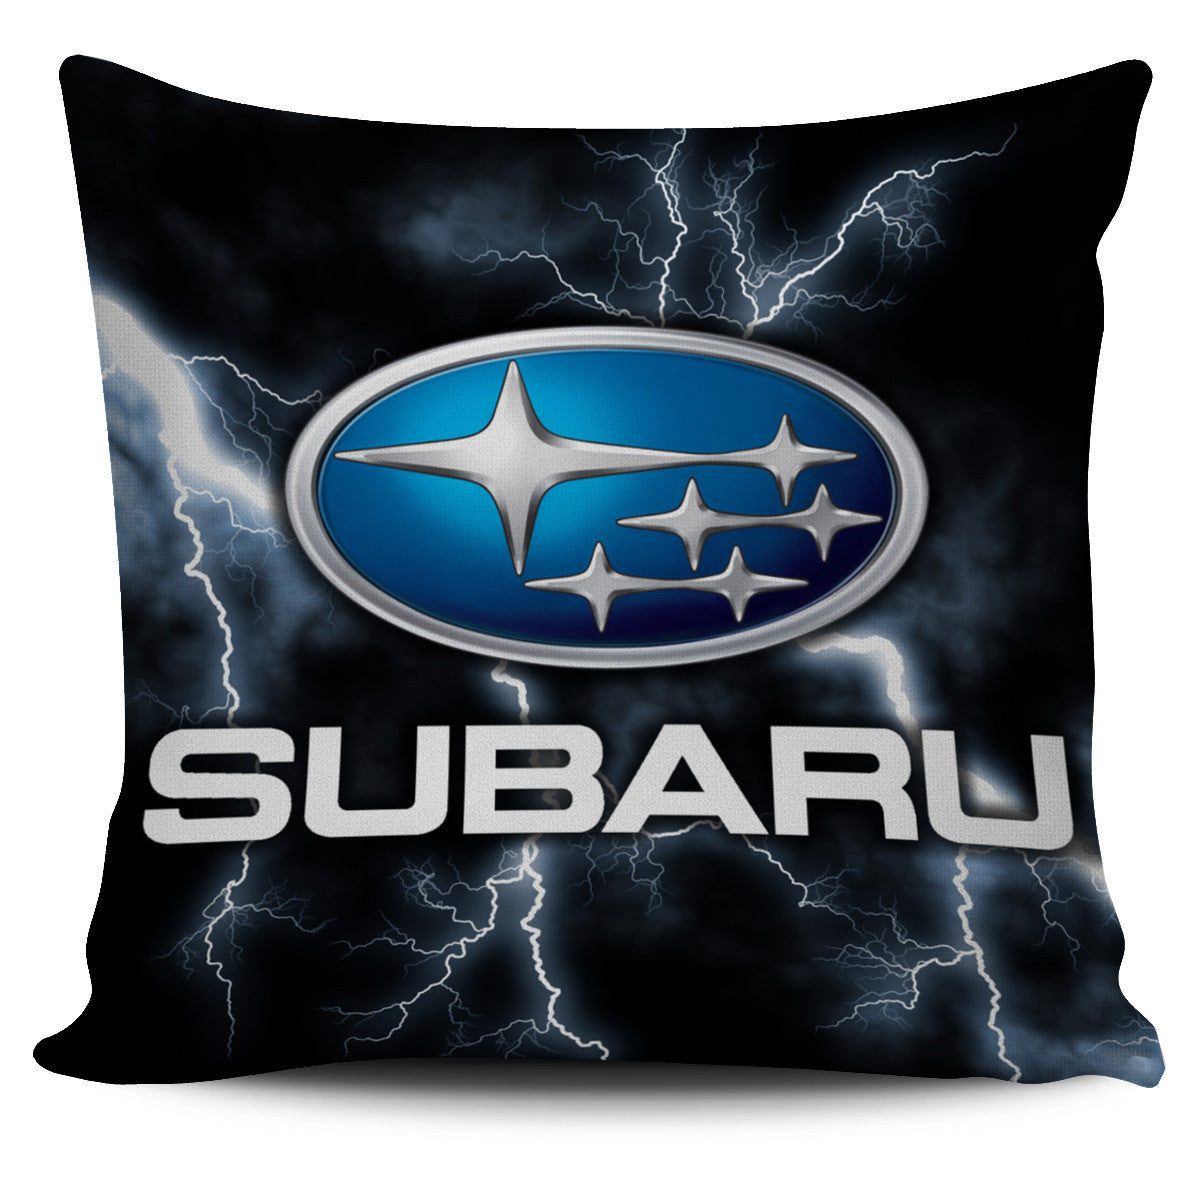 Subaru Pillow Covers – My Car My Rules